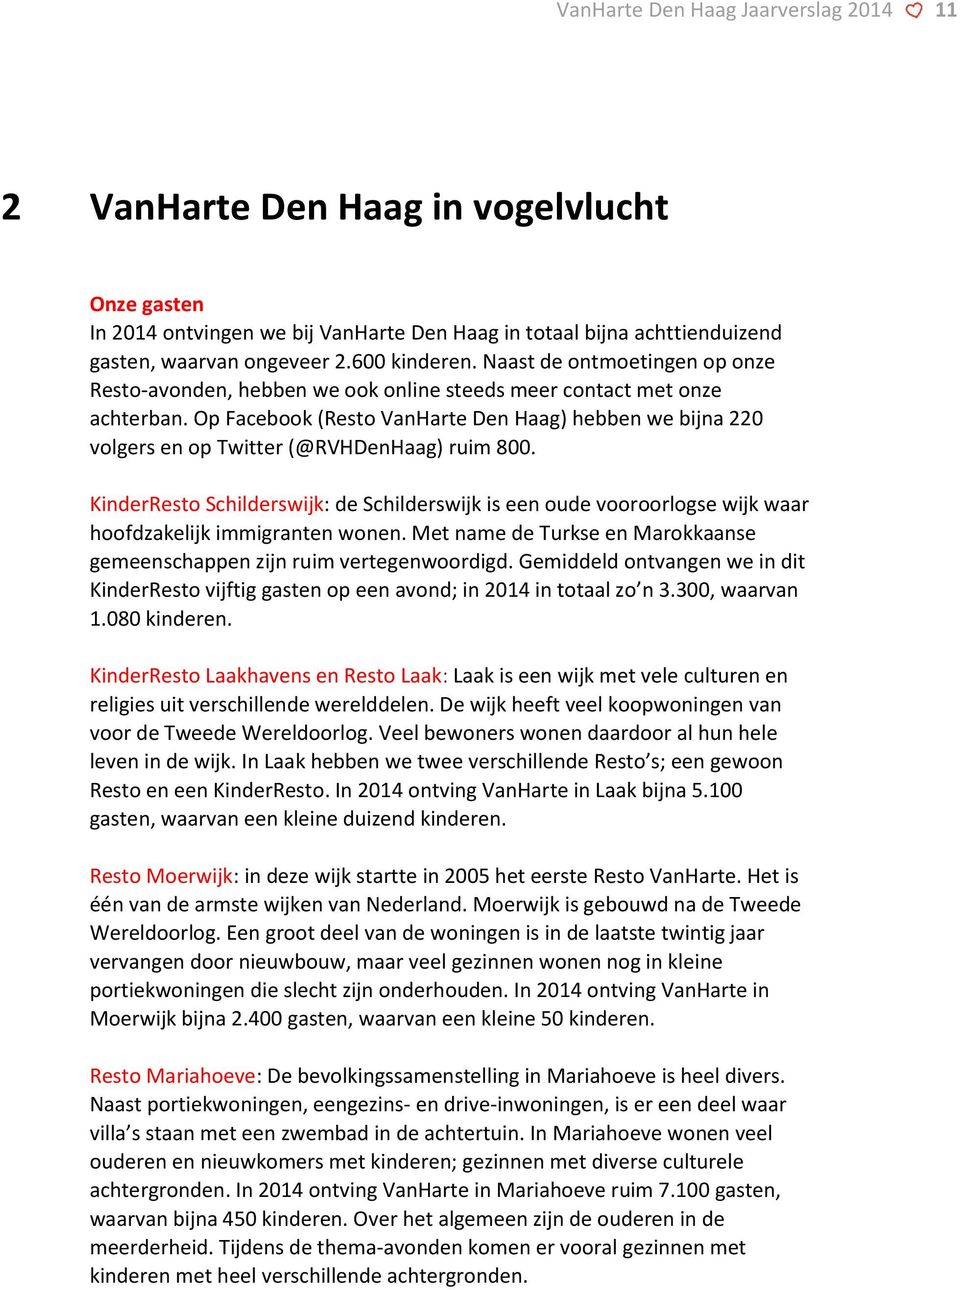 Op Facebook (Resto VanHarte Den Haag) hebben we bijna 220 volgers en op Twitter (@RVHDenHaag) ruim 800.